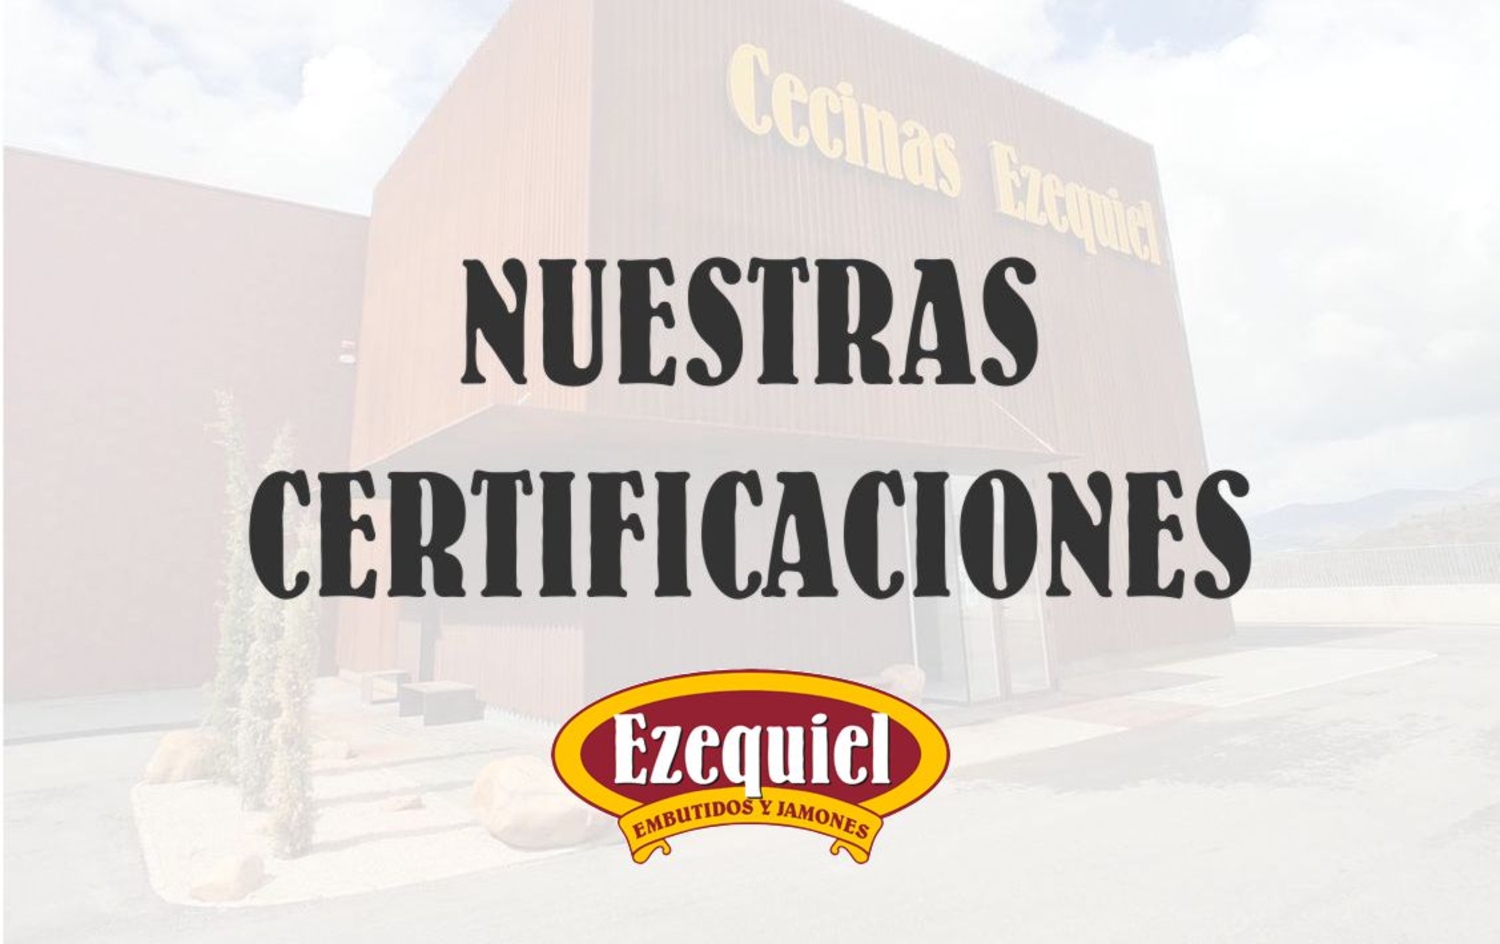 Nuestras Certificaciones